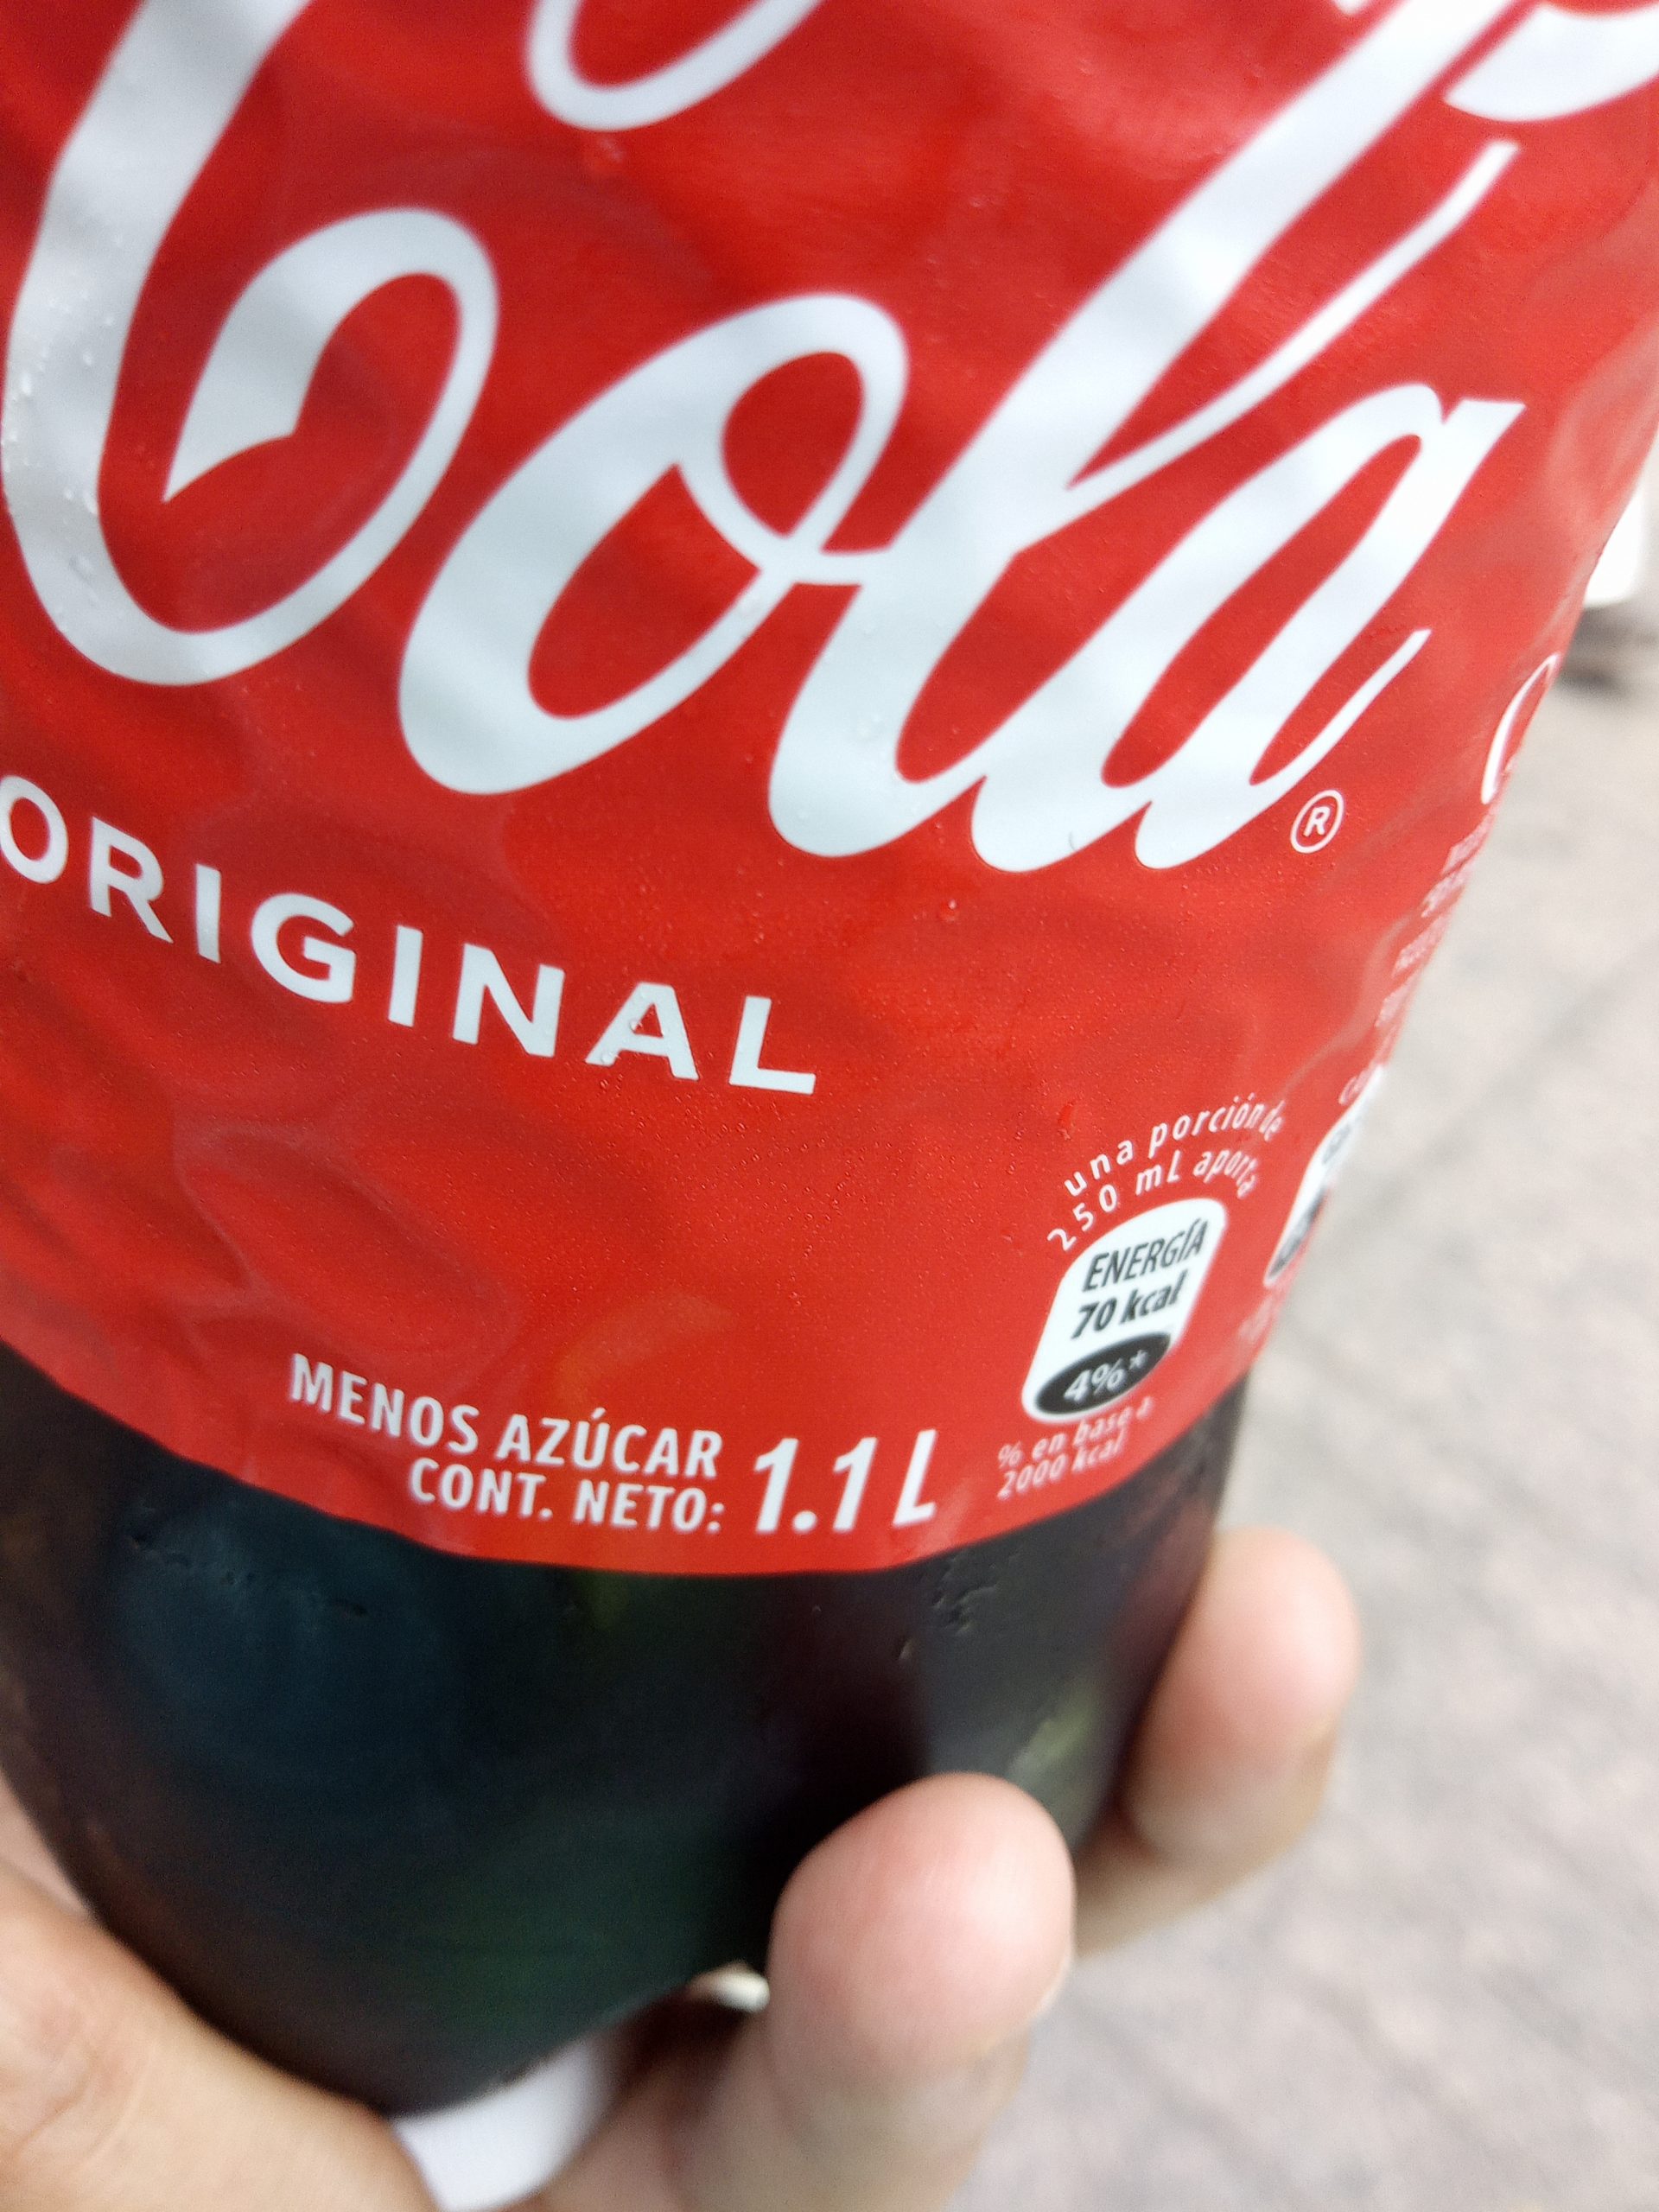 Coca cola tegucigalpa 